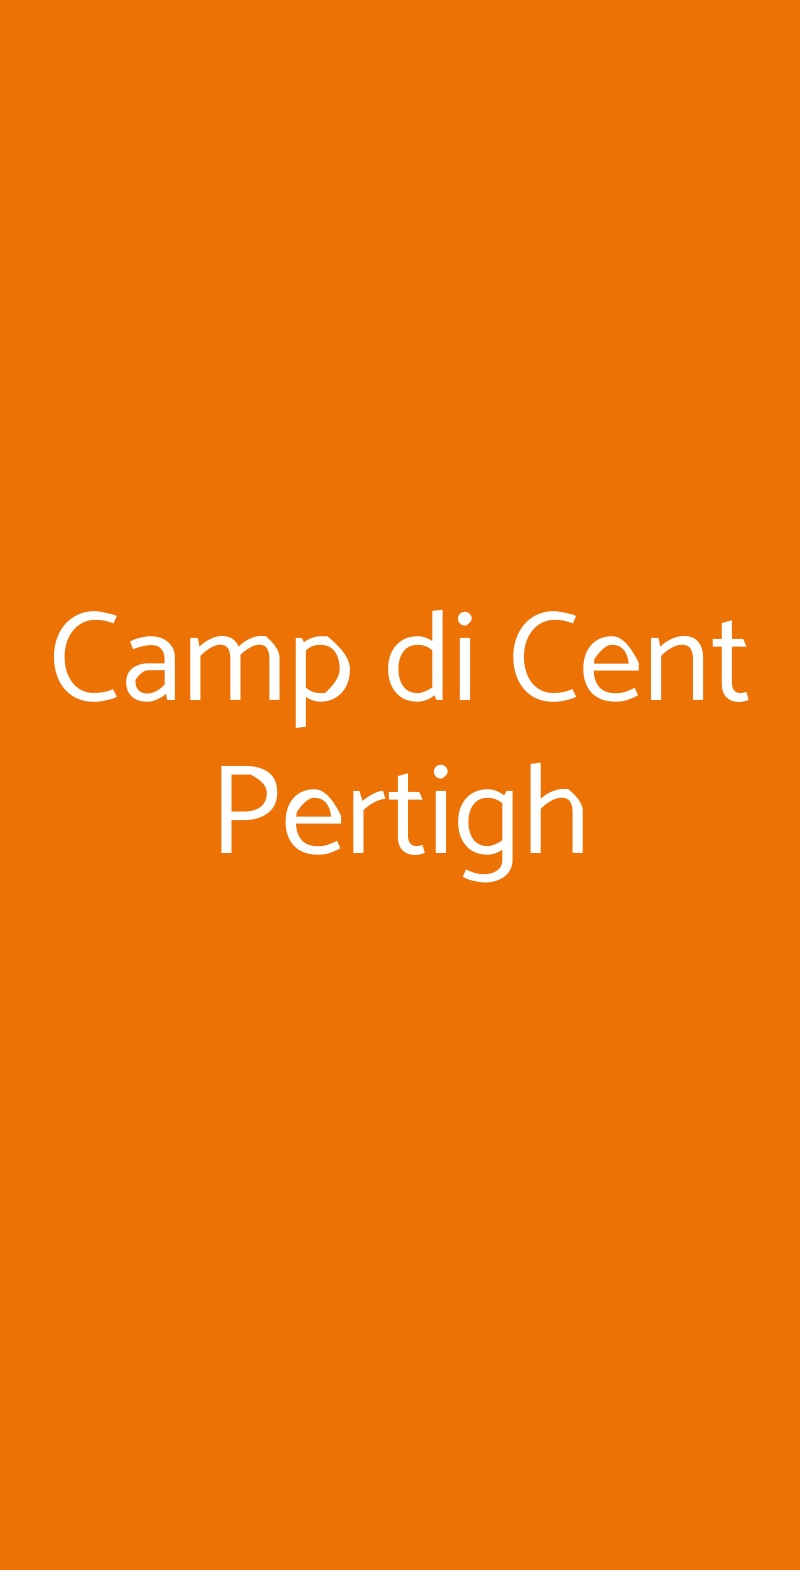 Camp di Cent Pertigh CARATE BRIANZA menù 1 pagina